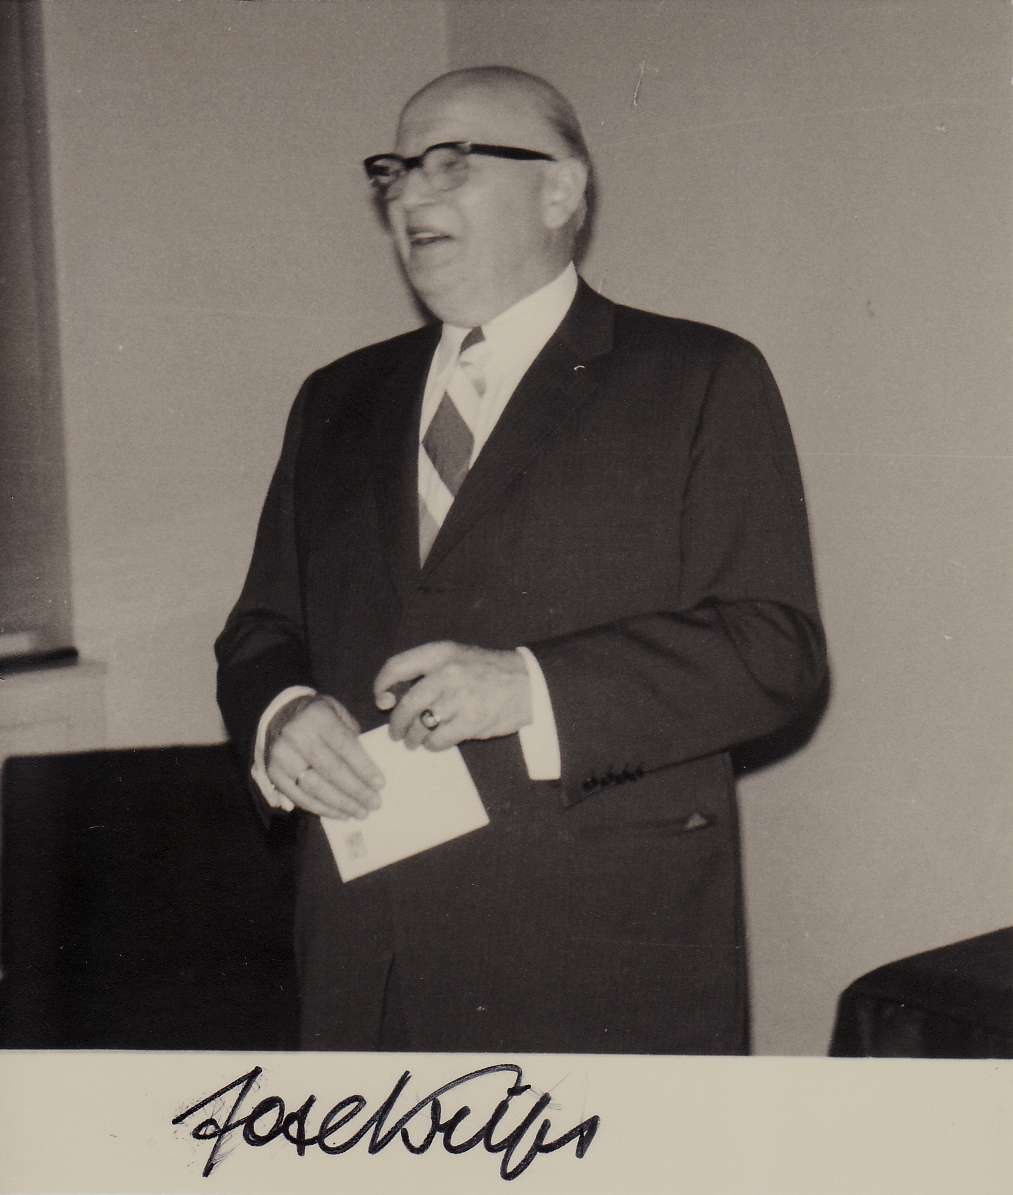 Josef Krips, photo de la collection de Gil Frossard, tout droits réservés. À noter qu'à la main gauche, il porte l'Anneau d'honneur de la Ville de Vienne, reçu en 1962. Photo prise le 20.05.1971 (Musikverein Wien), signature du 25.06.1972.